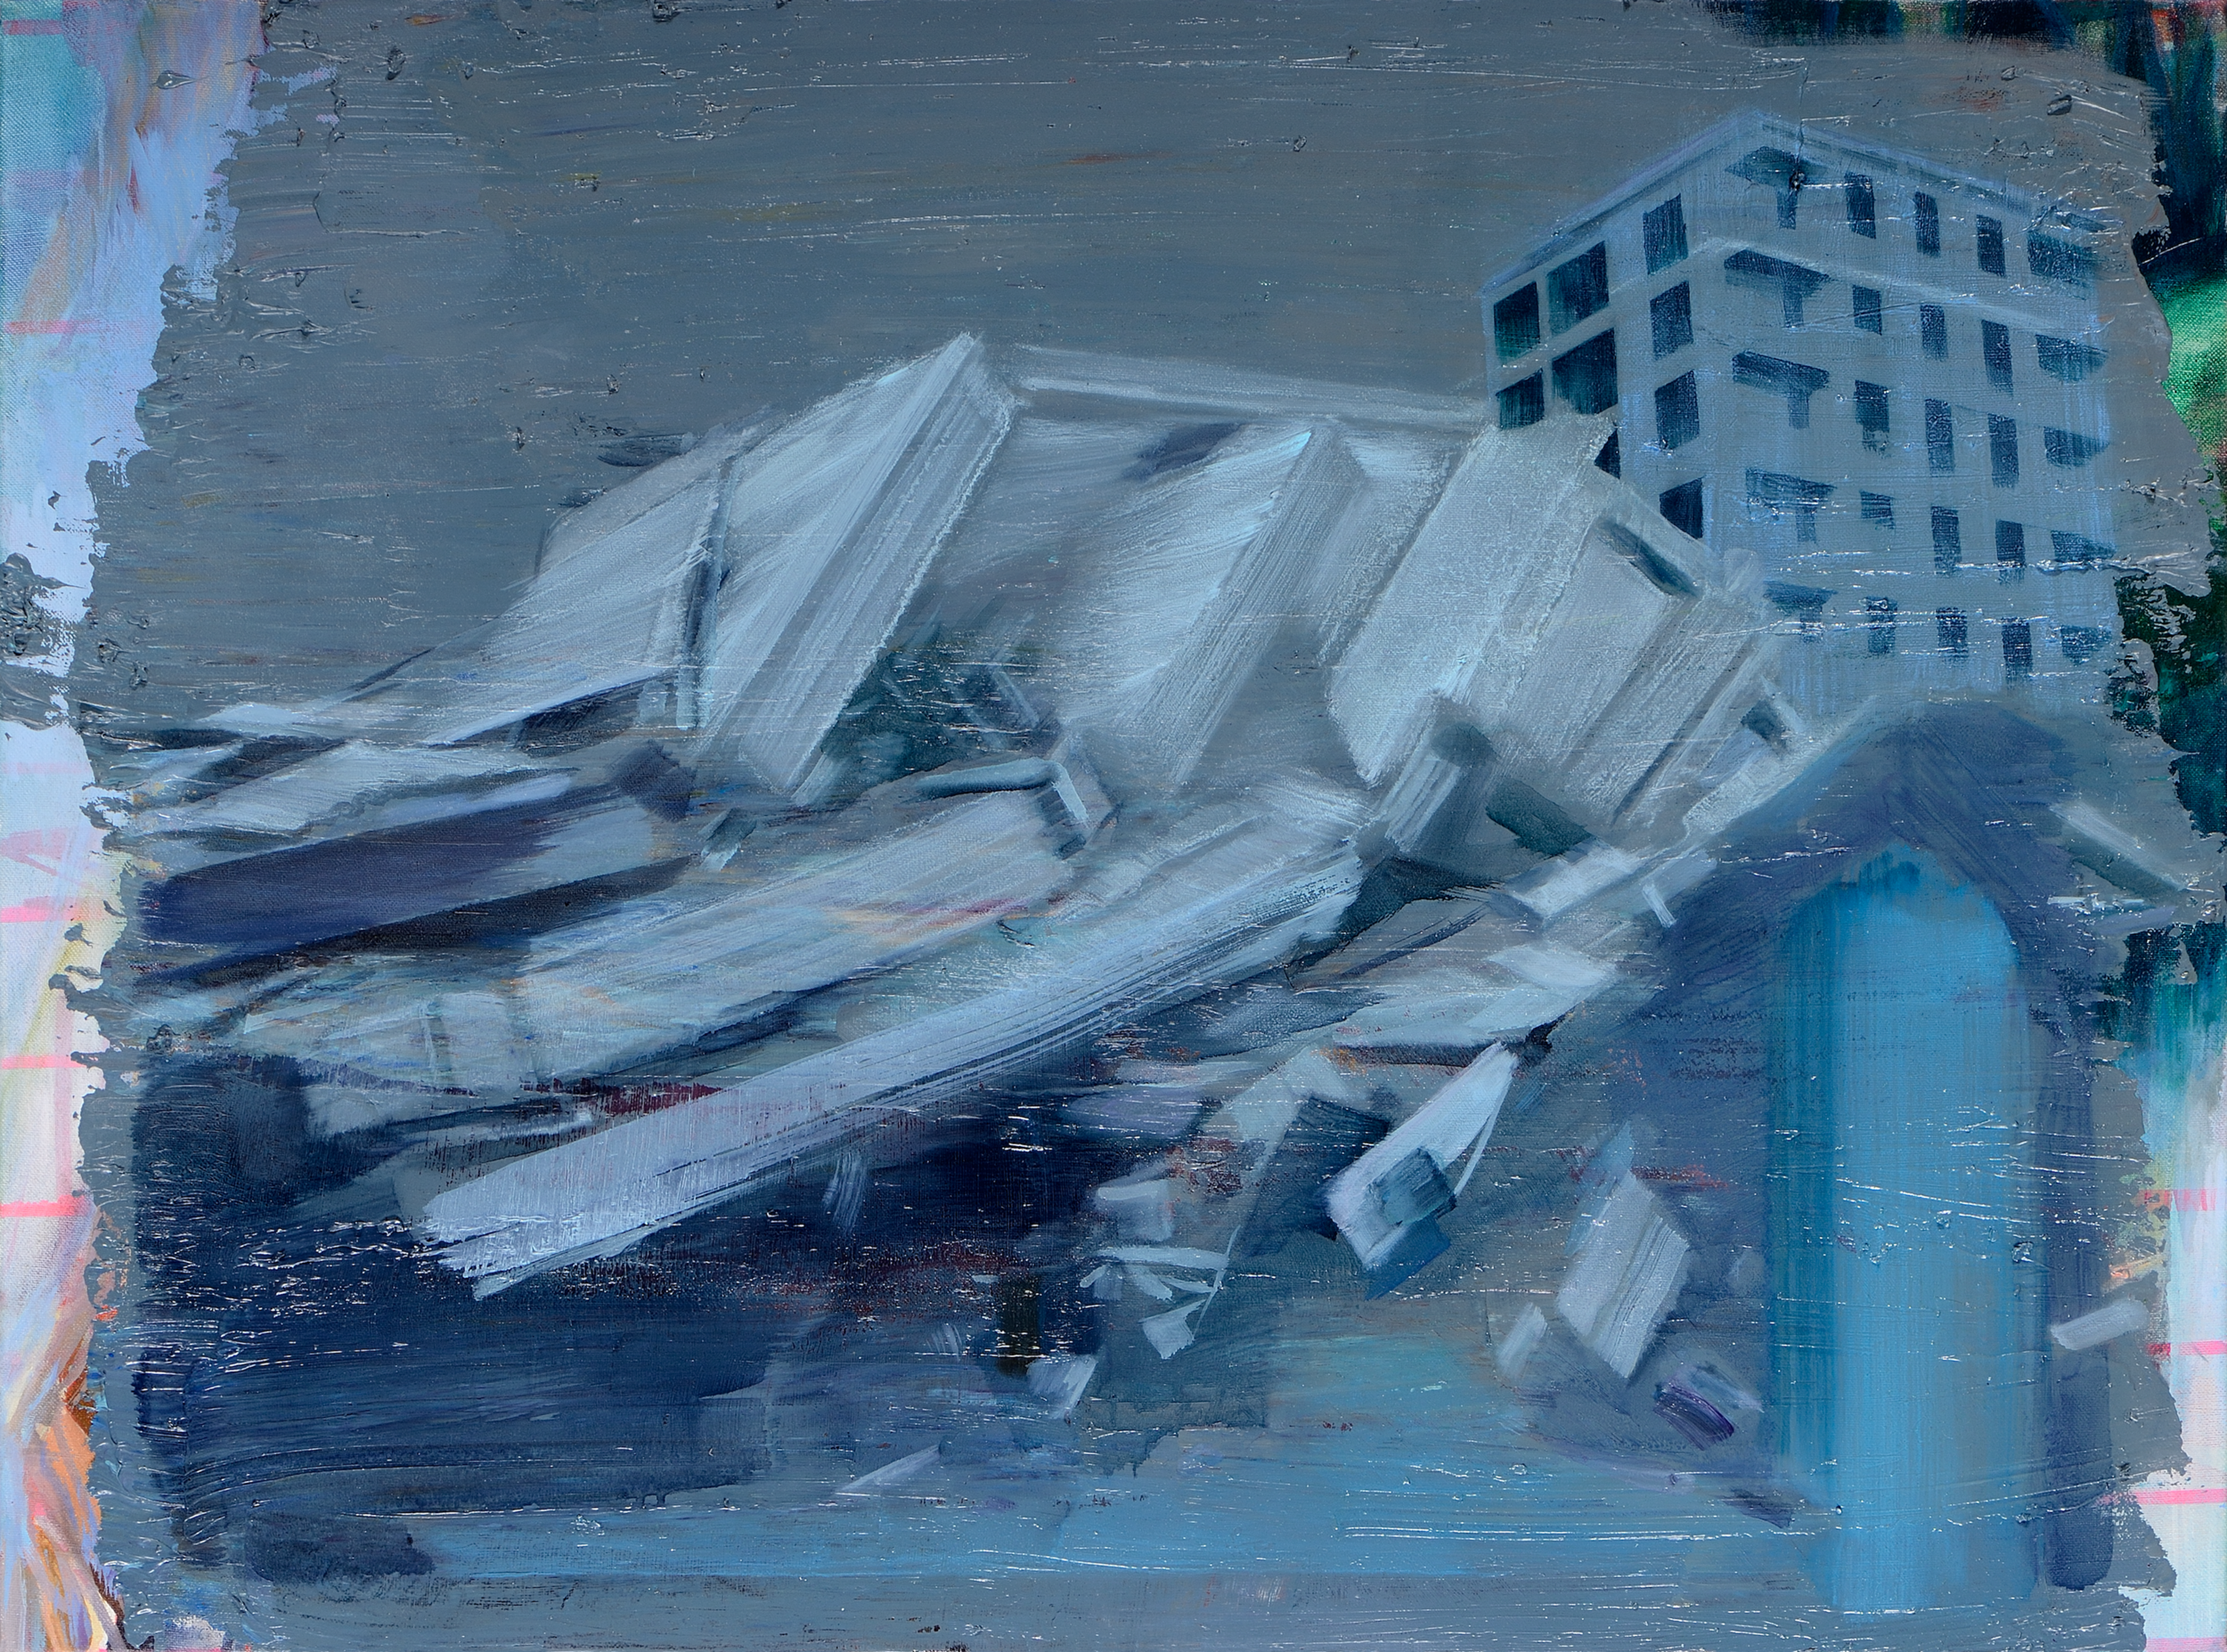   Einstürzende Neubauten (Time Piece) , 2012, oil on canvas, 60 x 81cm 